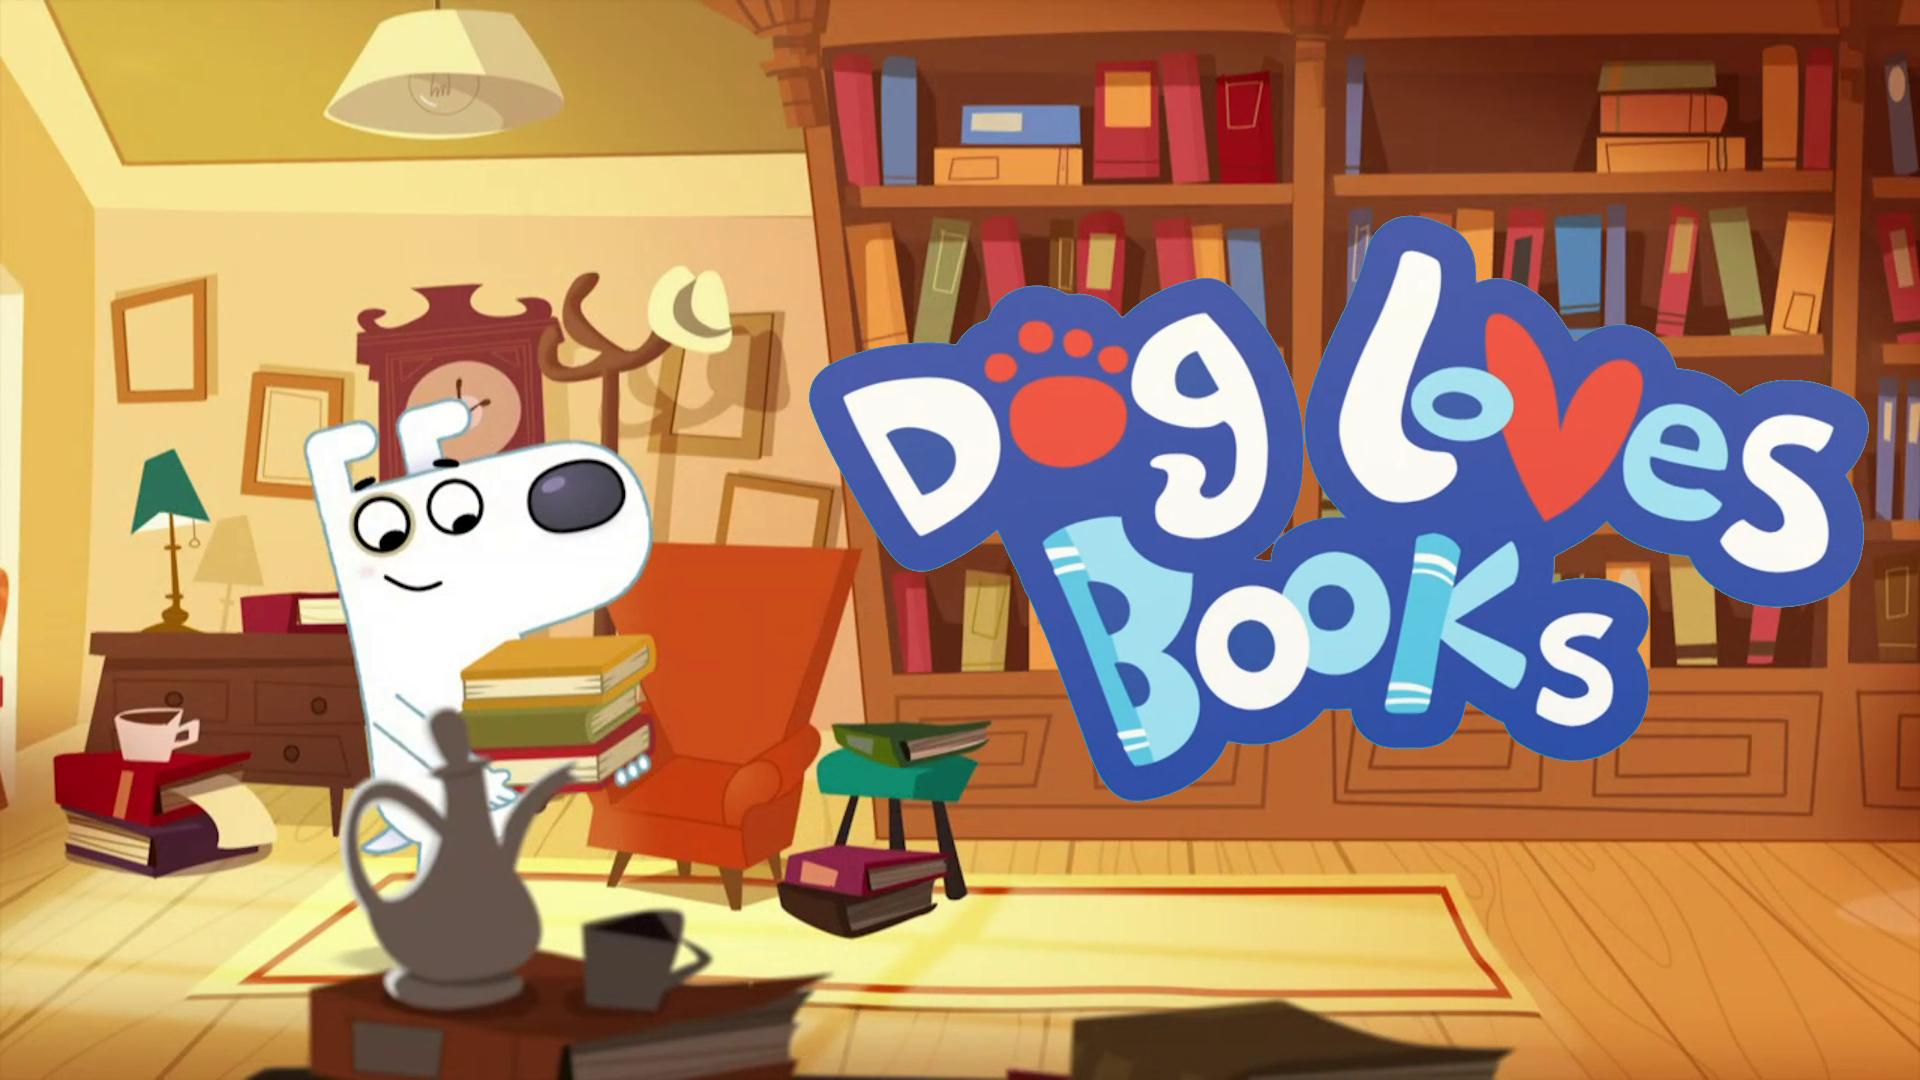 Dog Loves Books